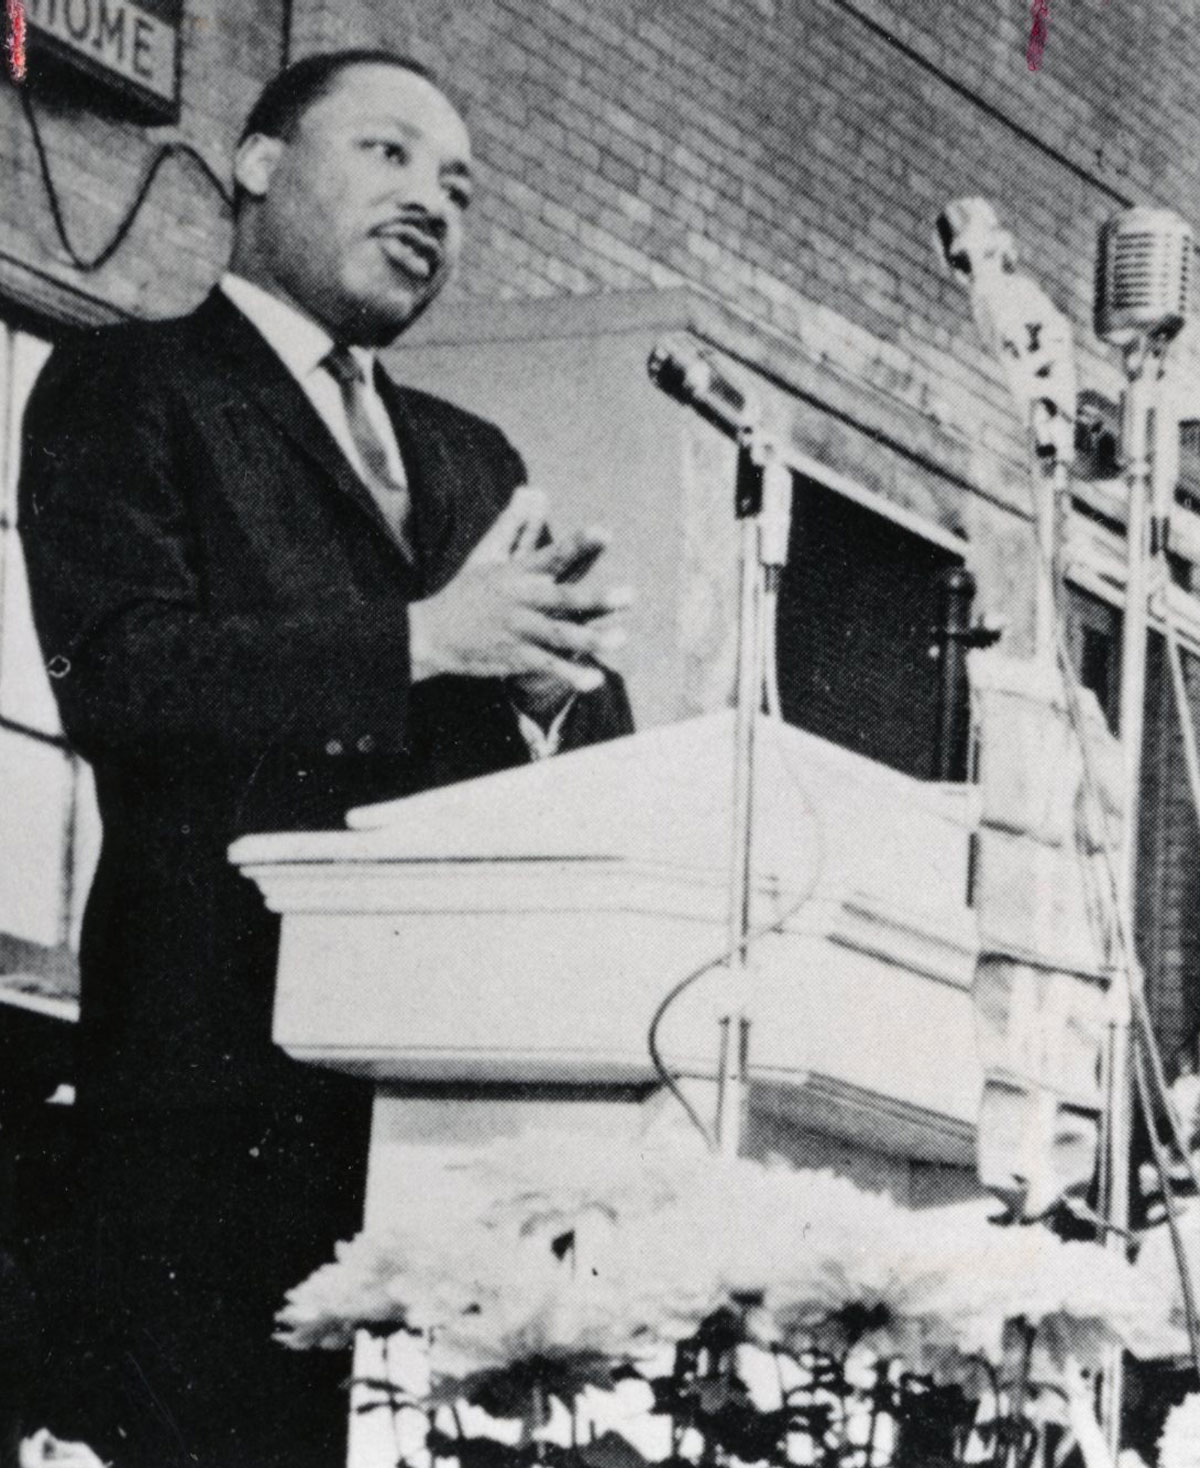 Dr. Martin Luther King Jr. speaks at ONU